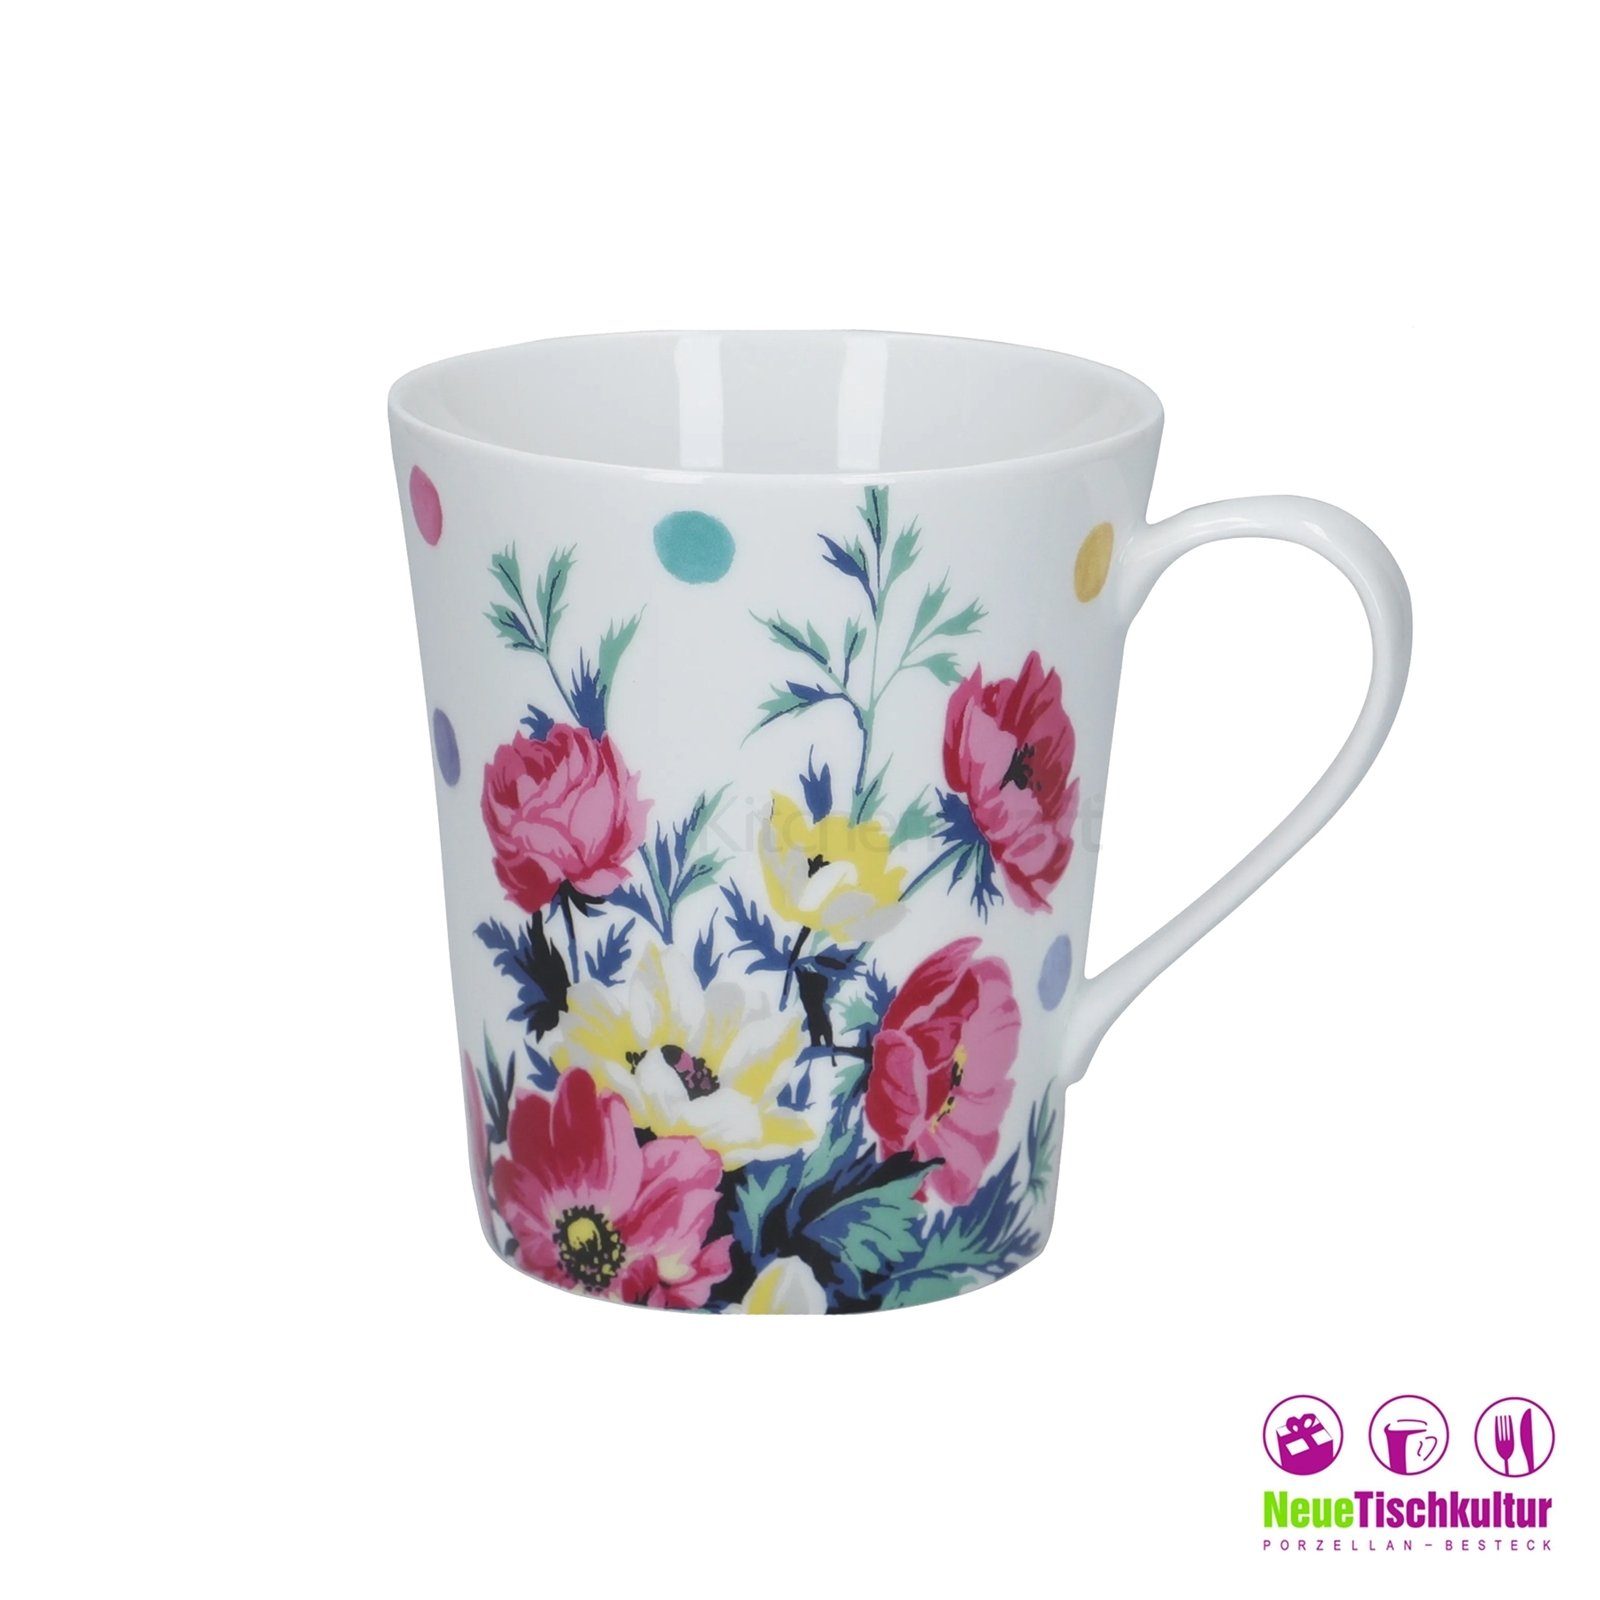 Porzellan Weiß Porzellan, Kaffeetasse Kaffeebecher Neuetischkultur Bunt Mikasa, 4er-Set Blume Tasse Blumendekor